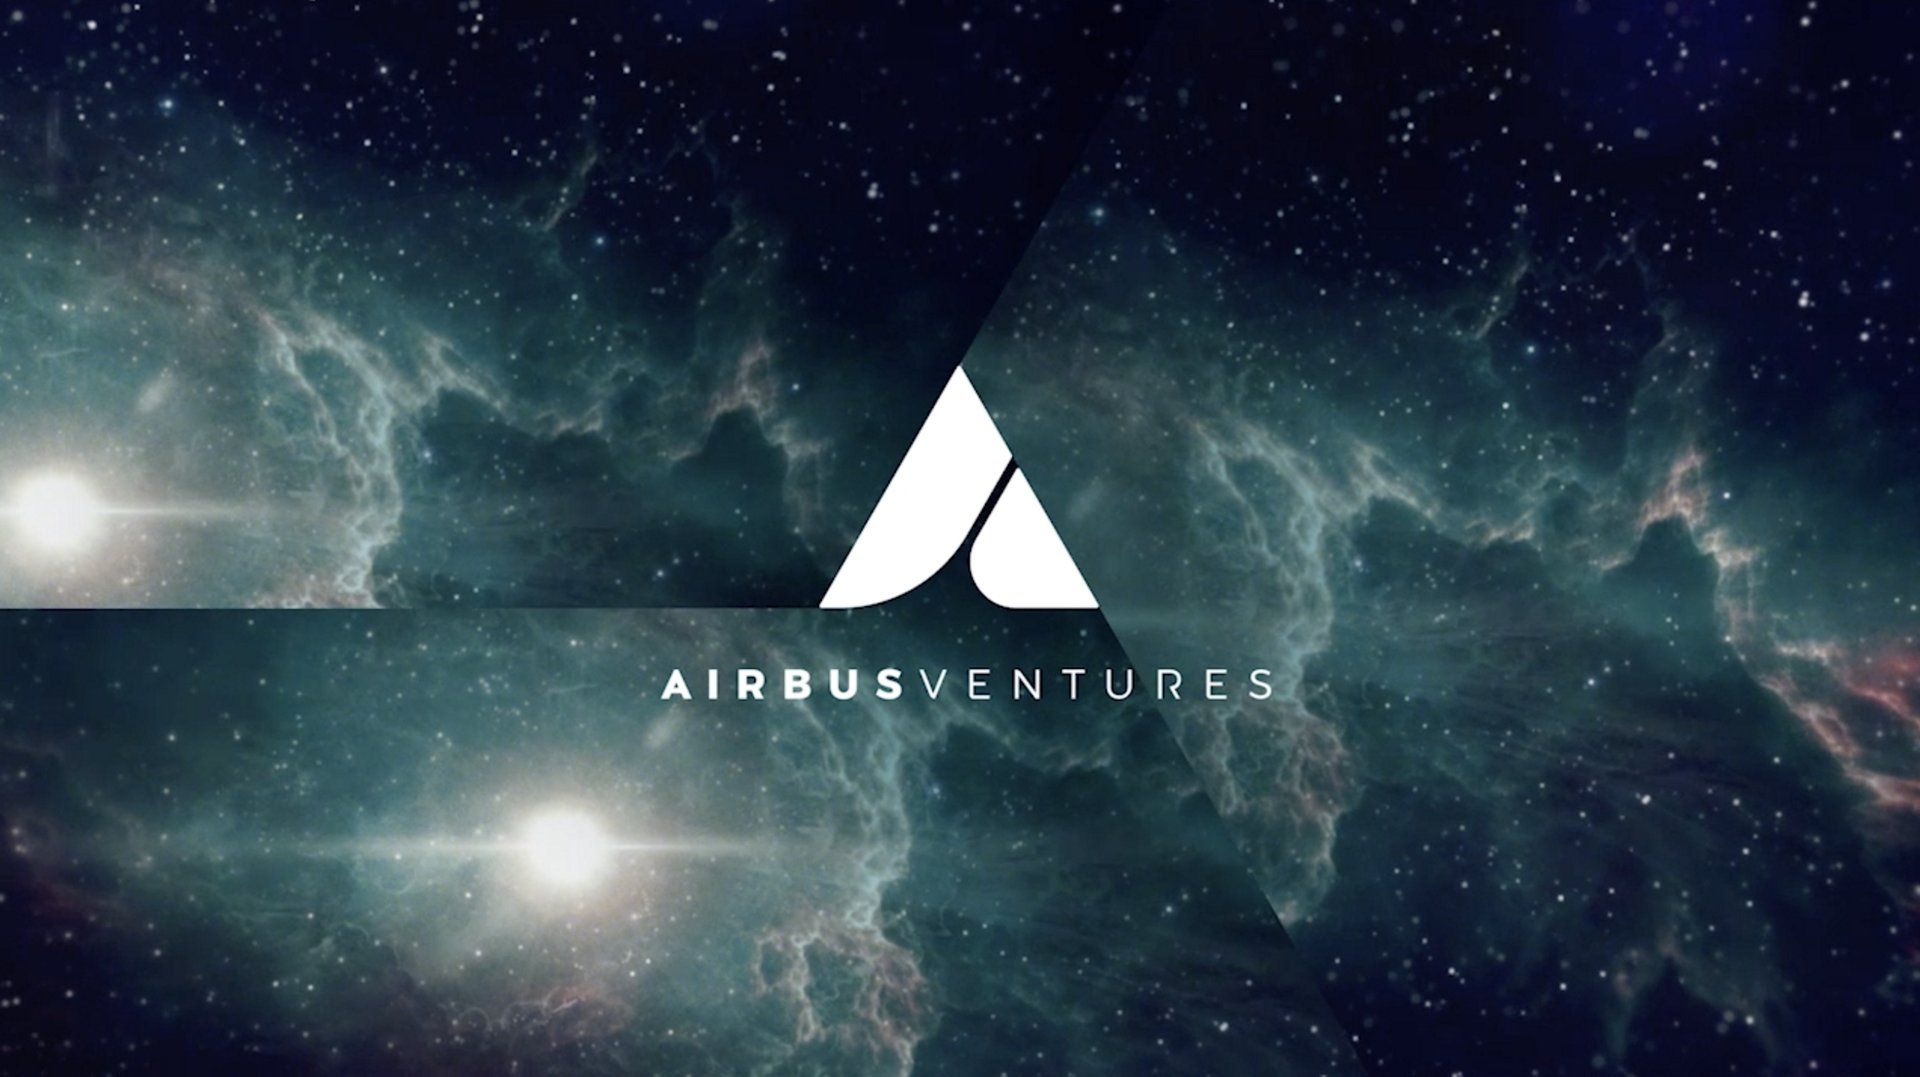 Venus Aerospace Adds Airbus Ventures to Investor Team